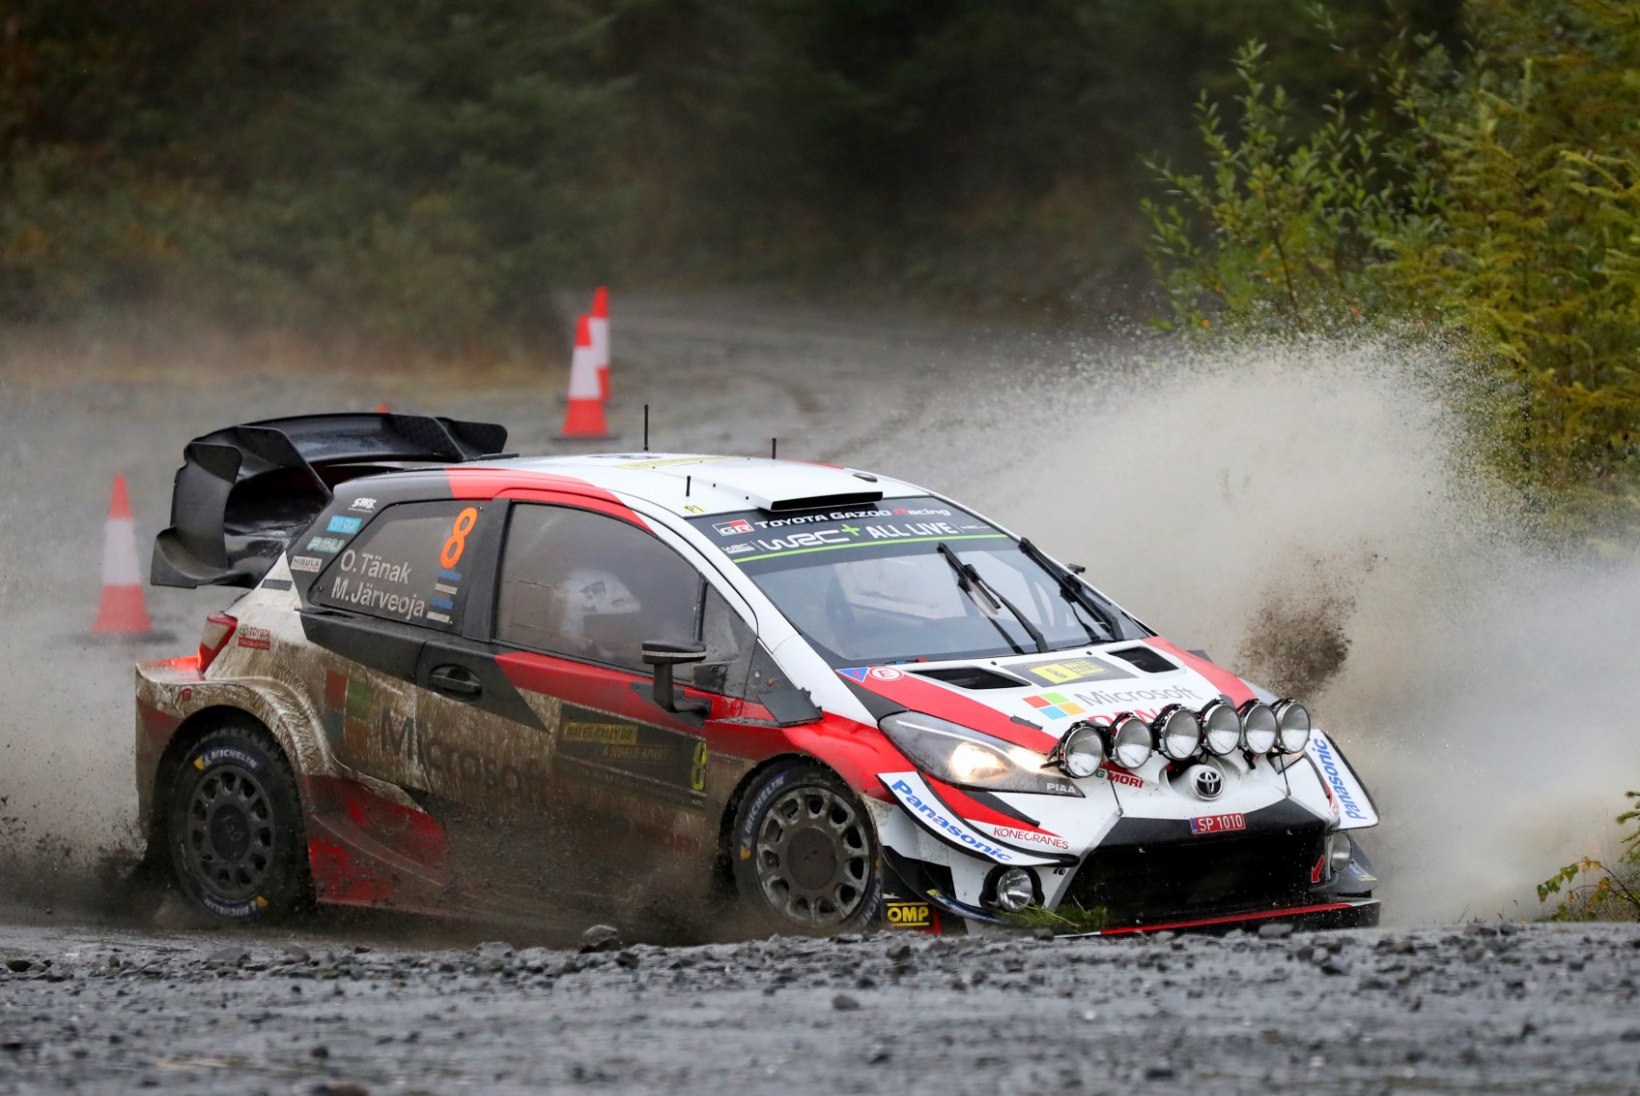 WRC-sarja ootab tõenäoliselt ees võimuvahetus, nimekas tegija kaalub taandumist